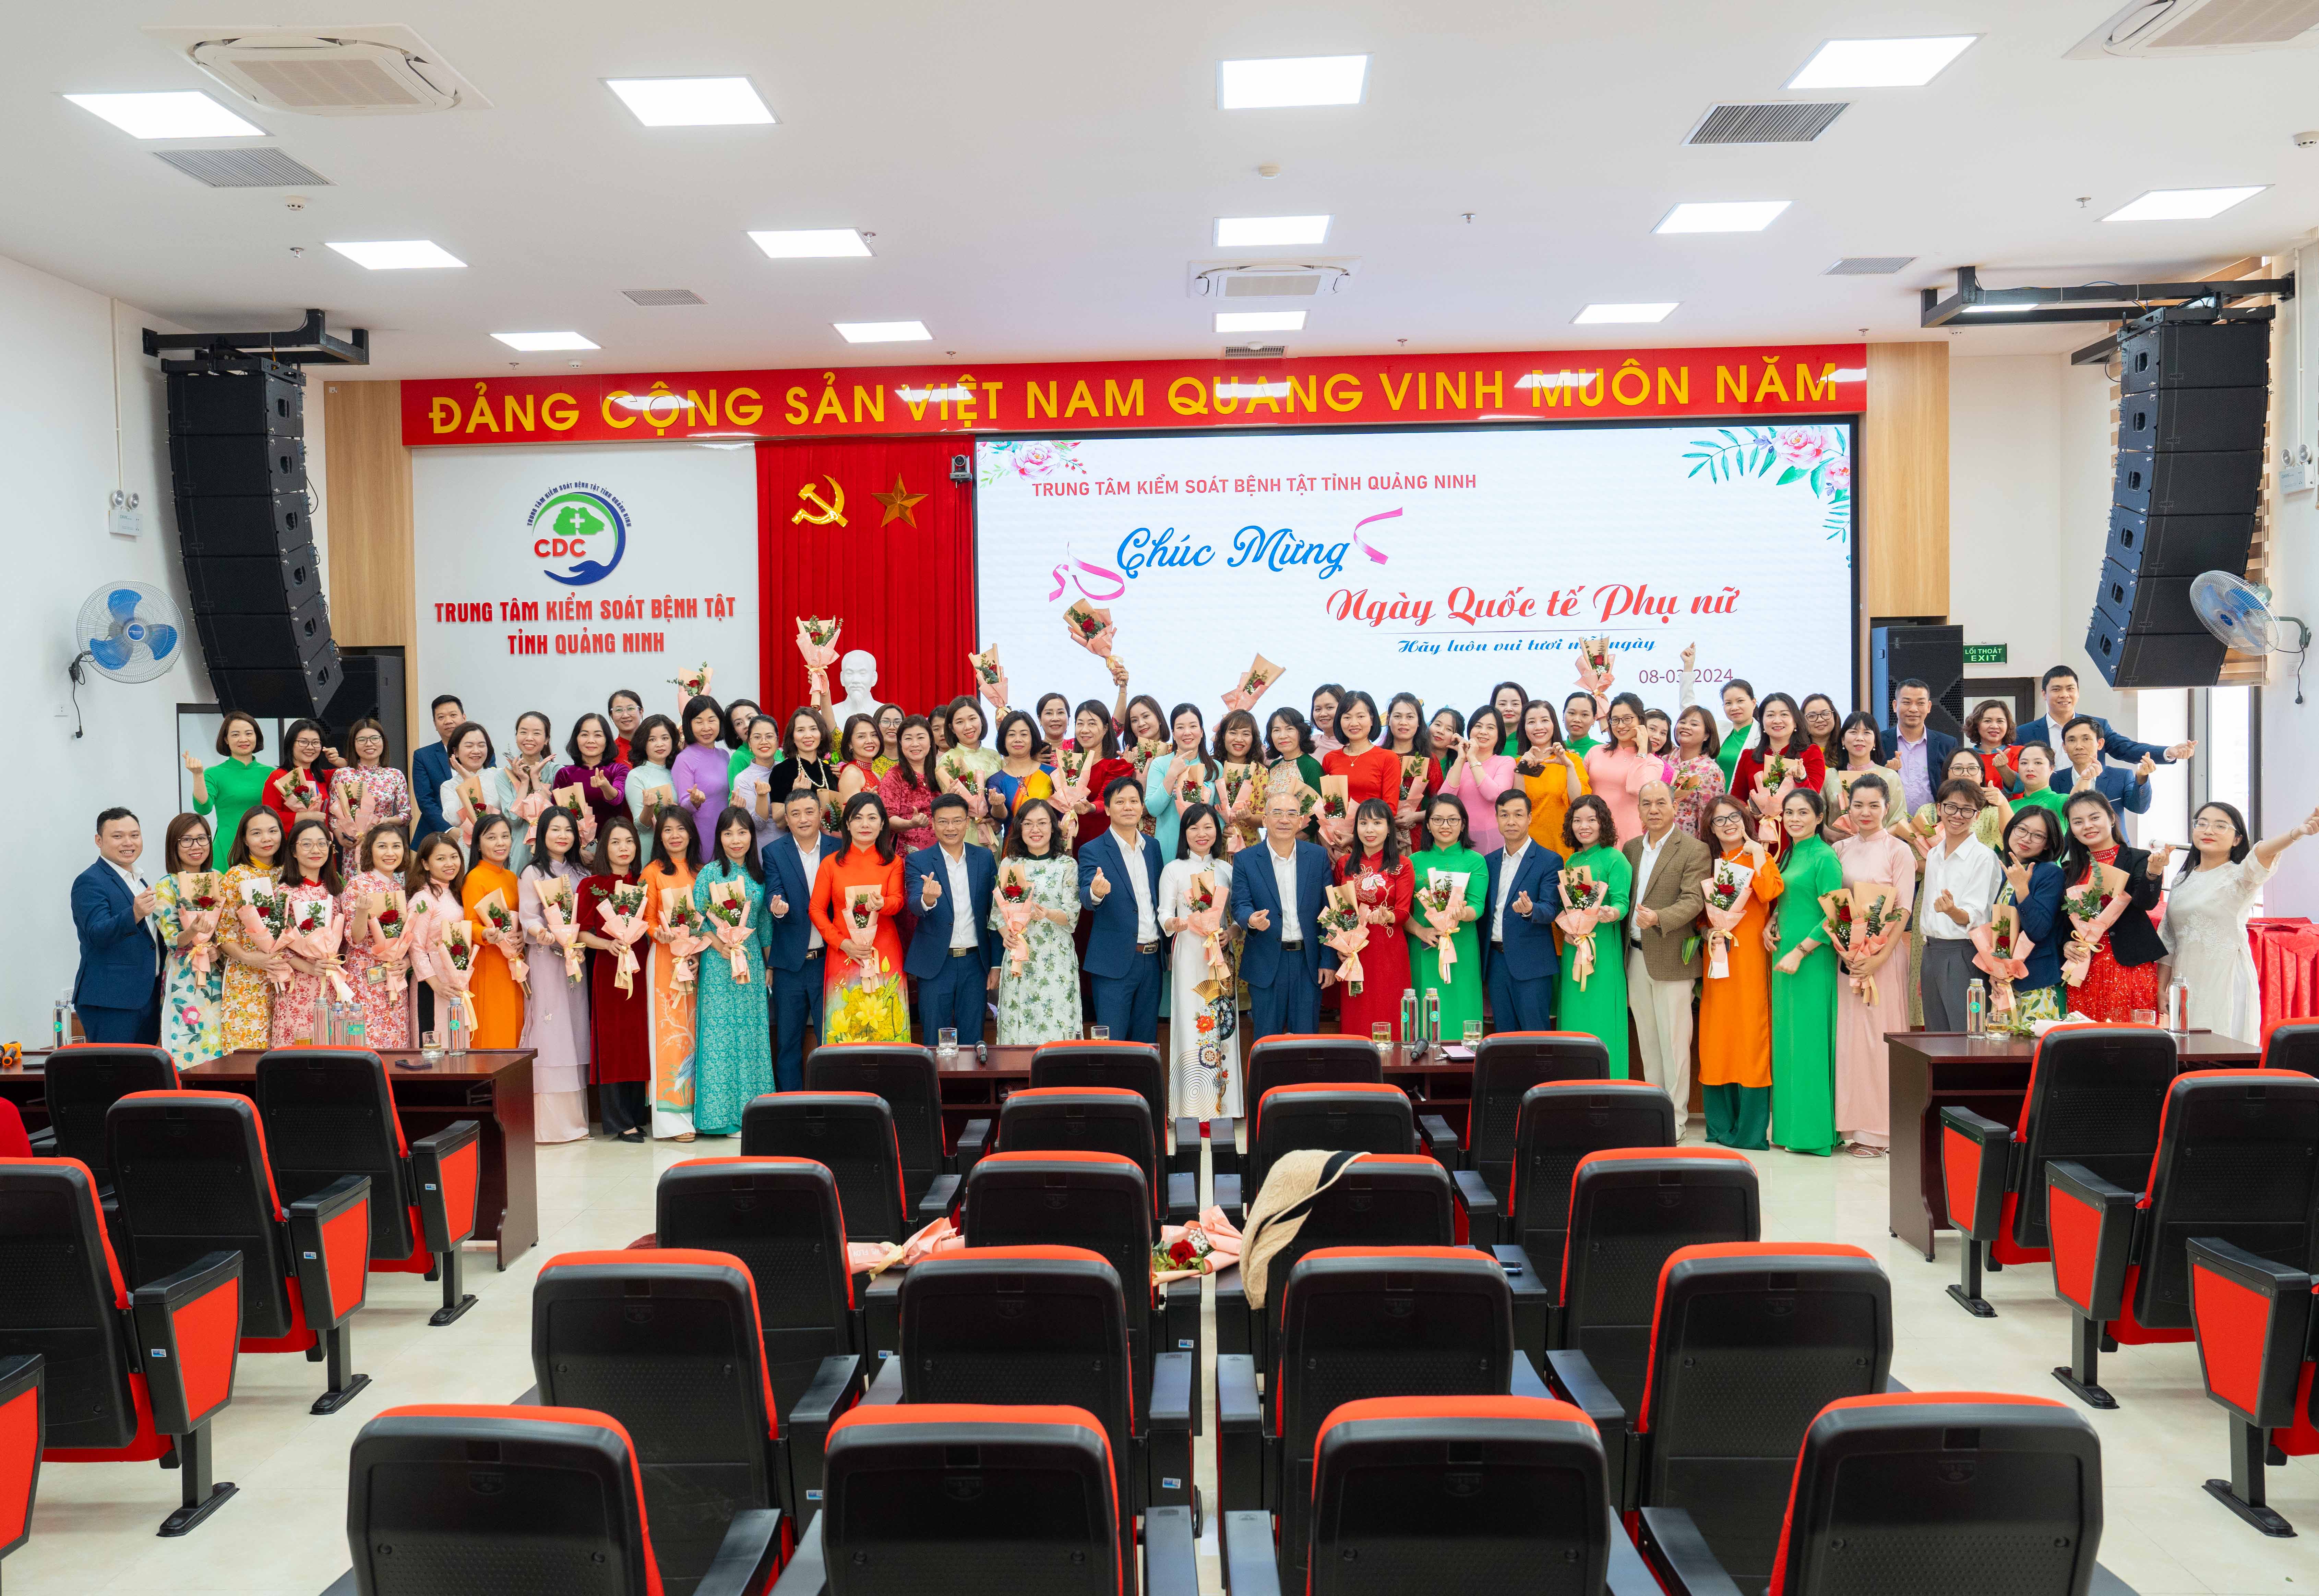 CDC Quảng Ninh: Kỷ niệm 114 năm ngày Quốc tế Phụ nữ 8/3 và 1984 năm Khởi nghĩa Hai Bà Trưng